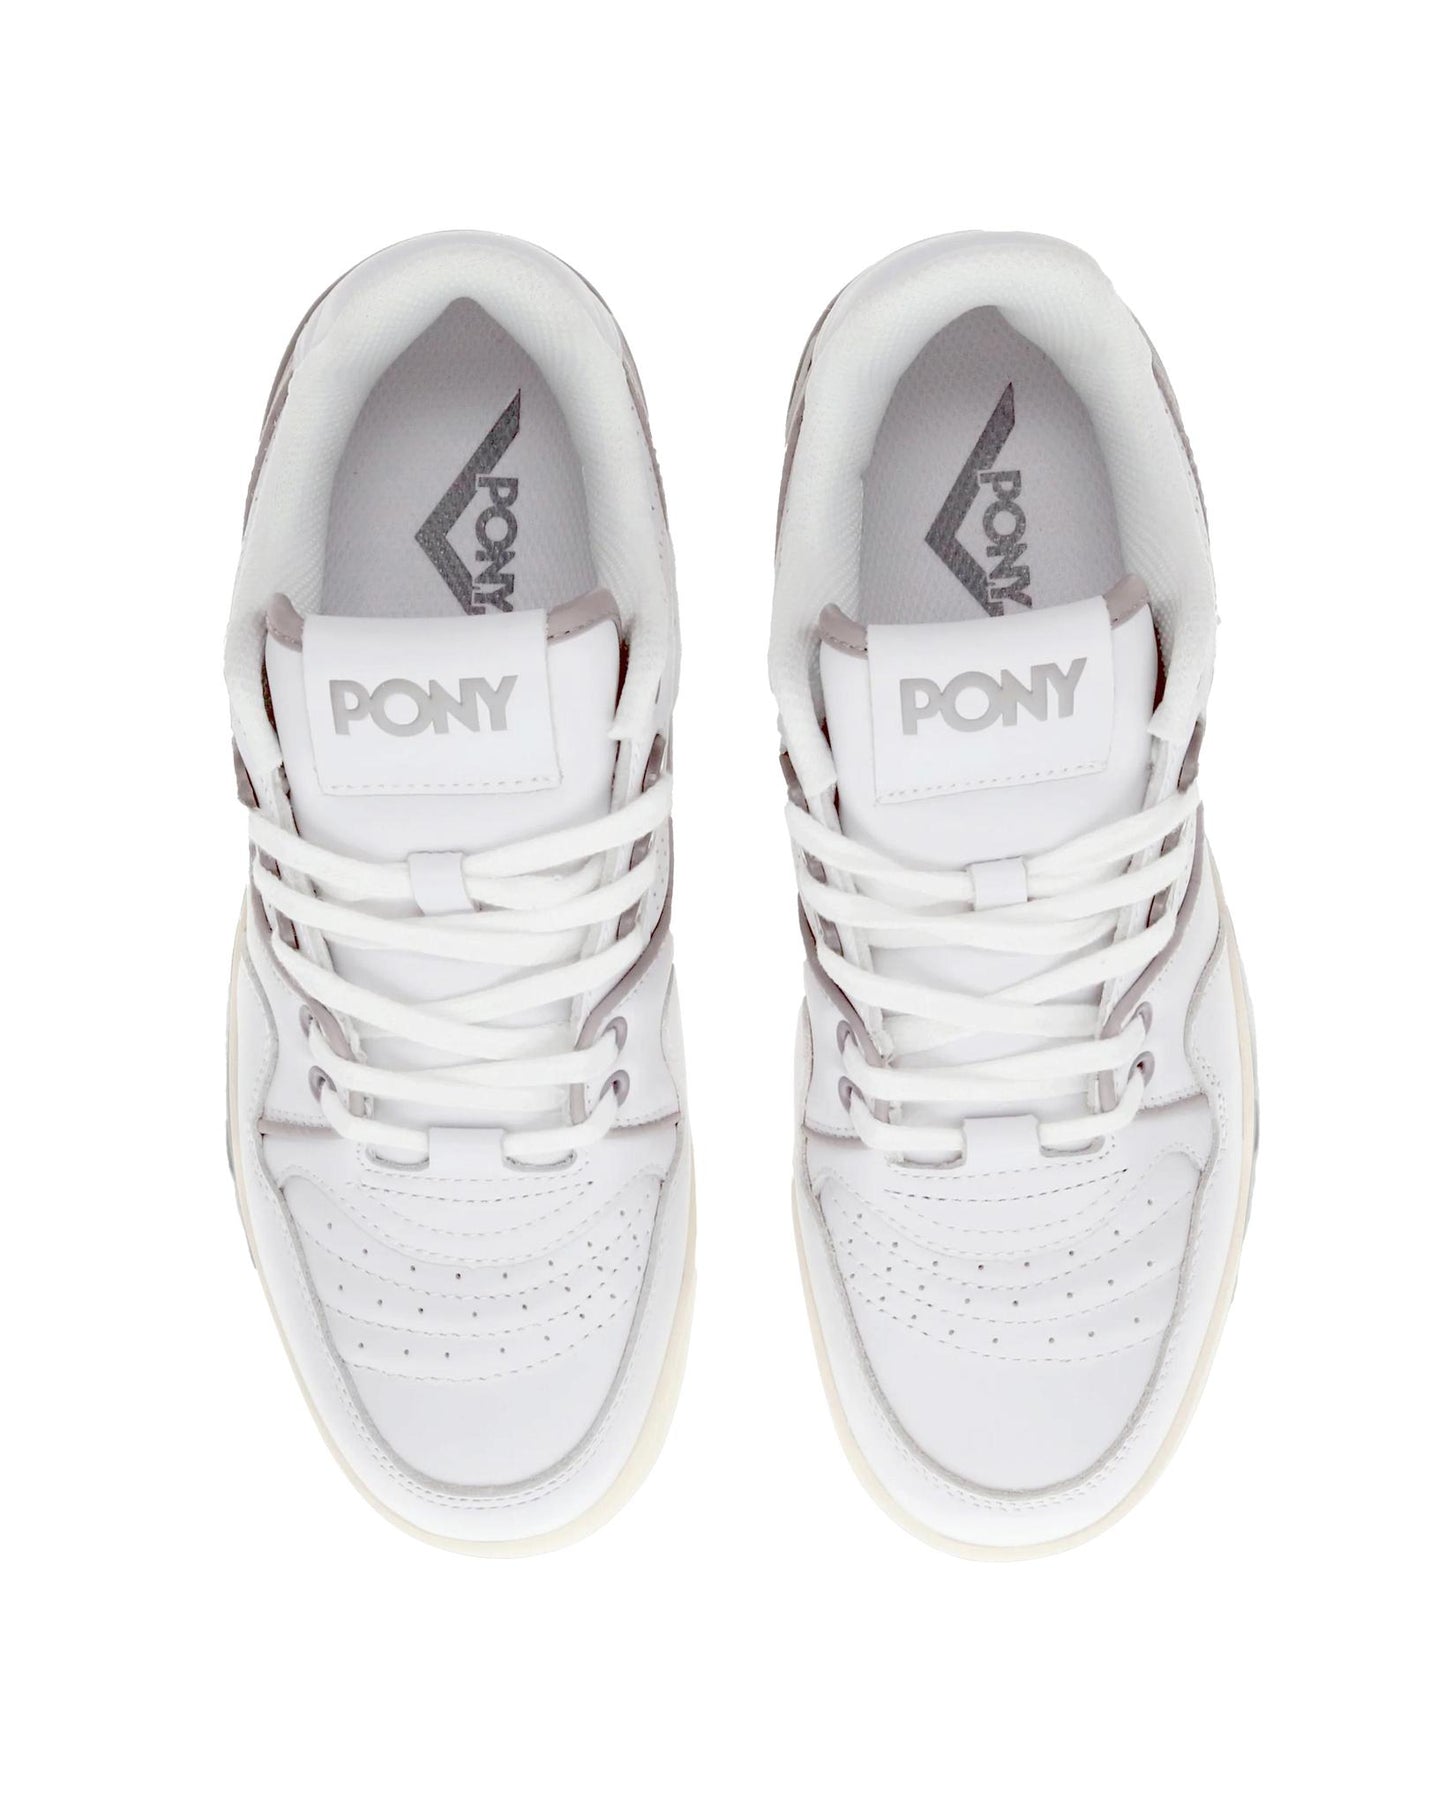 
                    
                      Pony M100 Low White/Grey
                    
                  